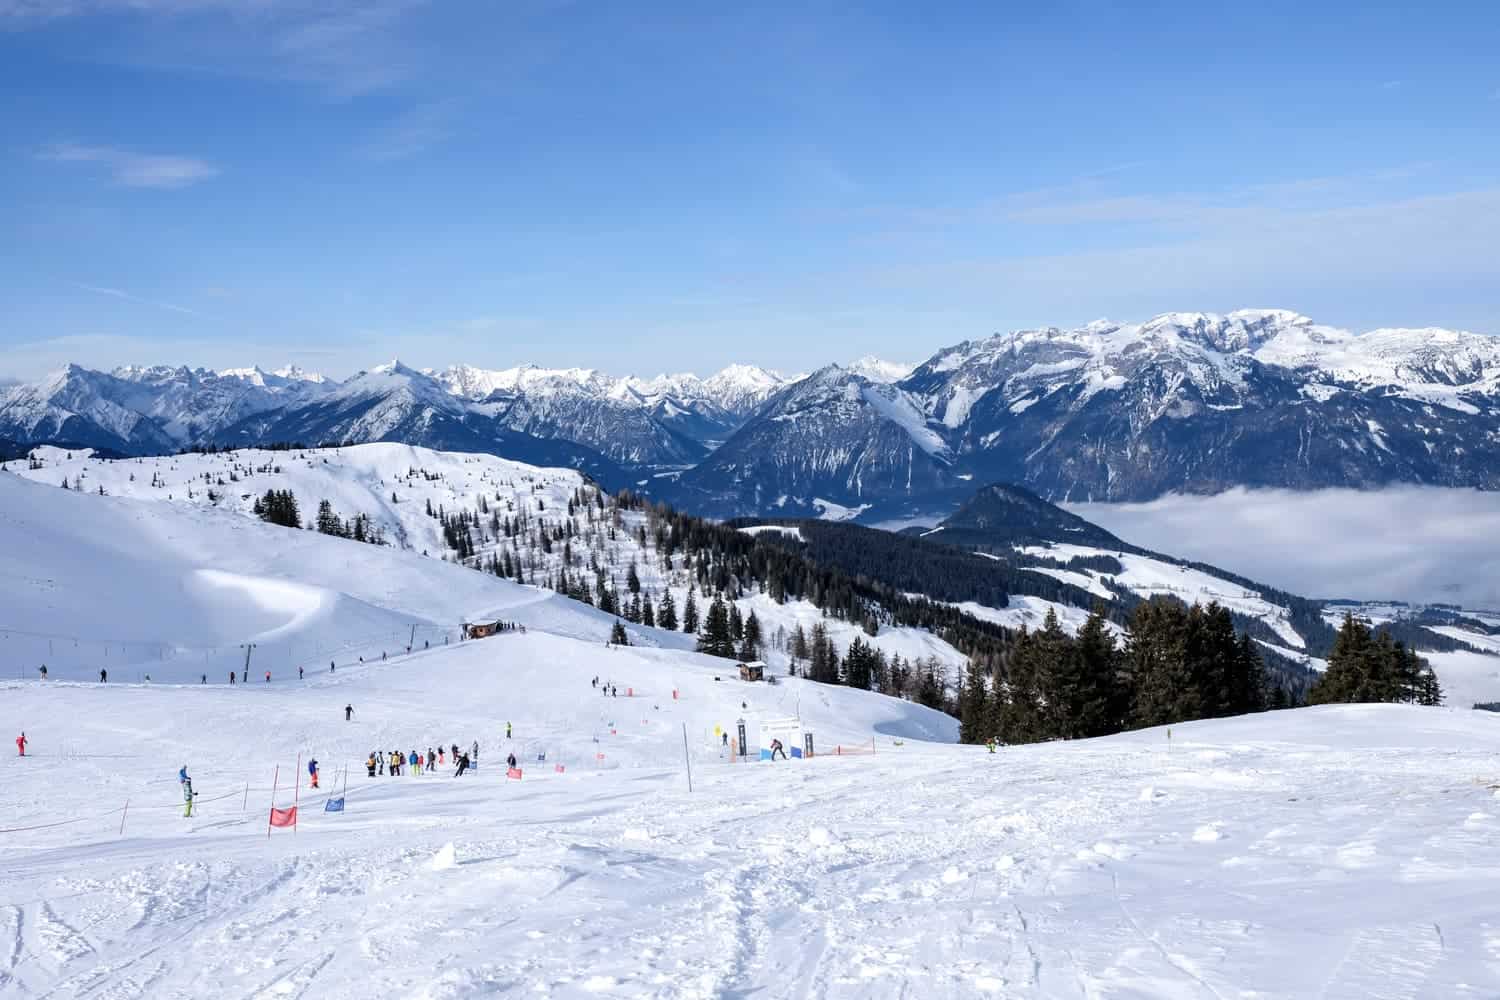 Skiing in Alpbachtal, Austria at Ski Jewel resort